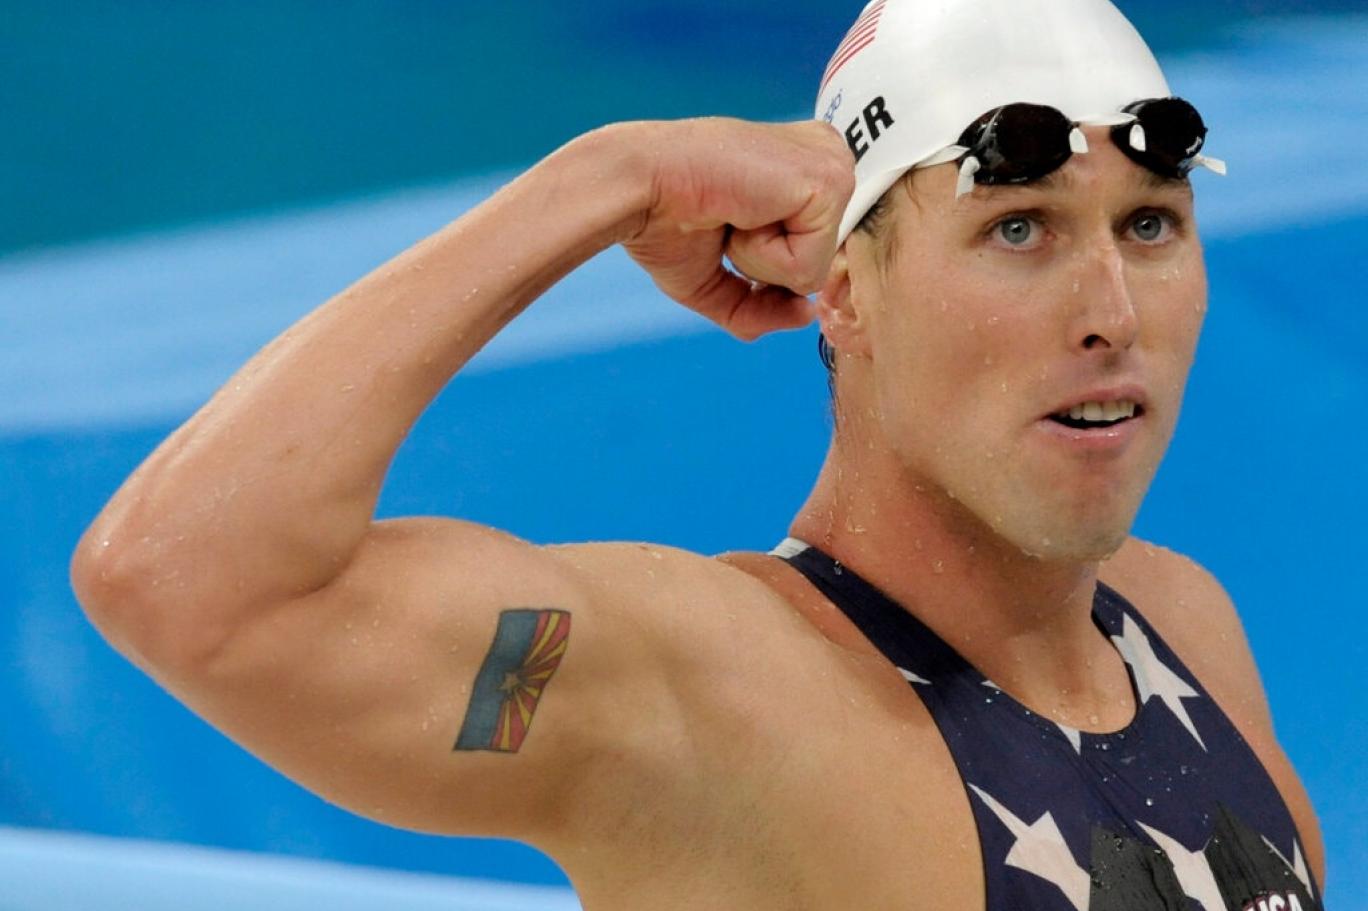 ABD'deki Kongre baskınında altın madalyalı olimpik yüzücünün de yer aldığı iddia edildi